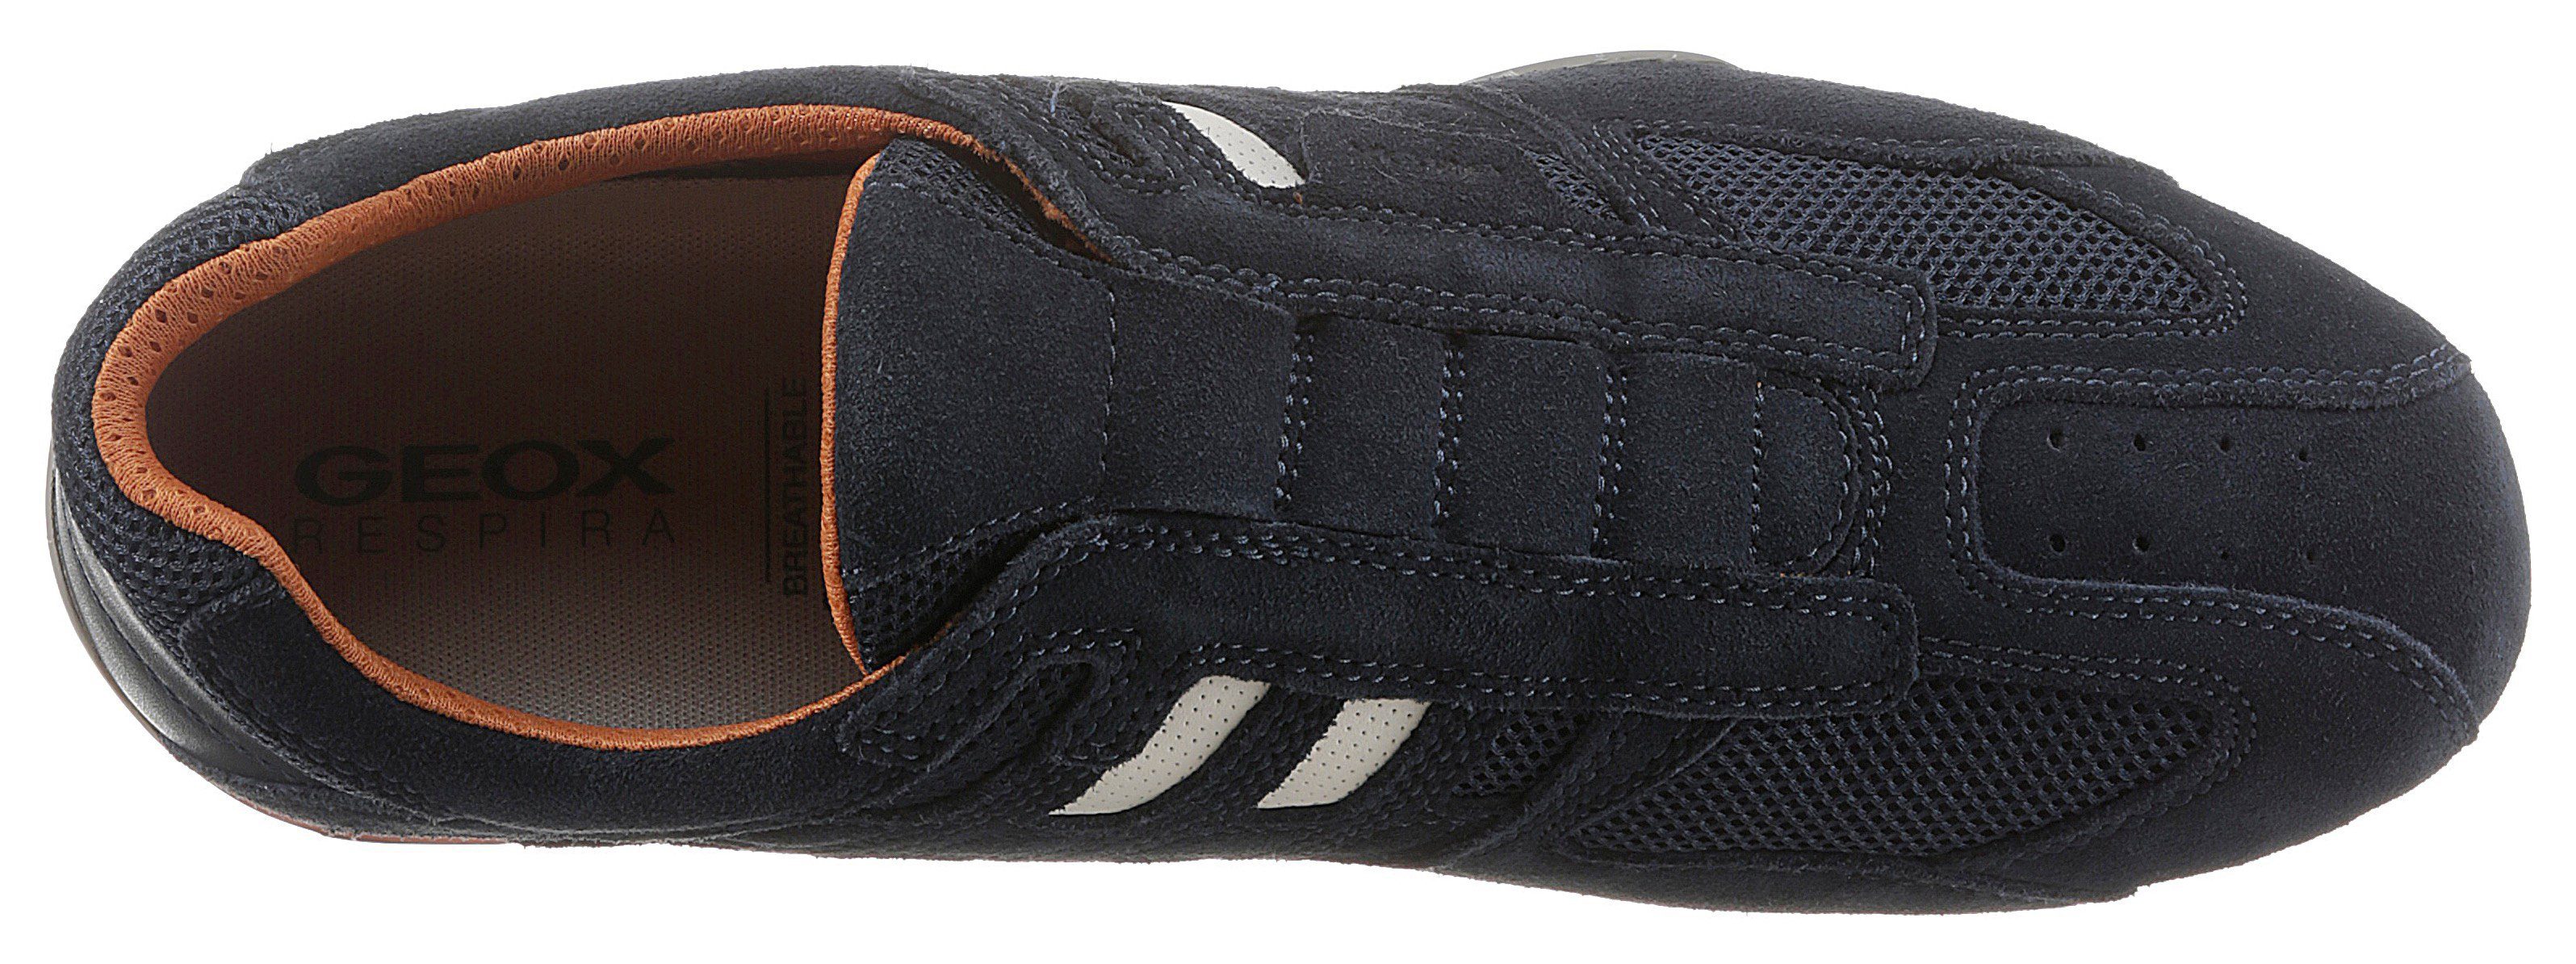 Membrane Slip-On mit Spezial Sneaker dunkel-blau Ziernähten und Geox modischen UOMO SNAKE Geox mit